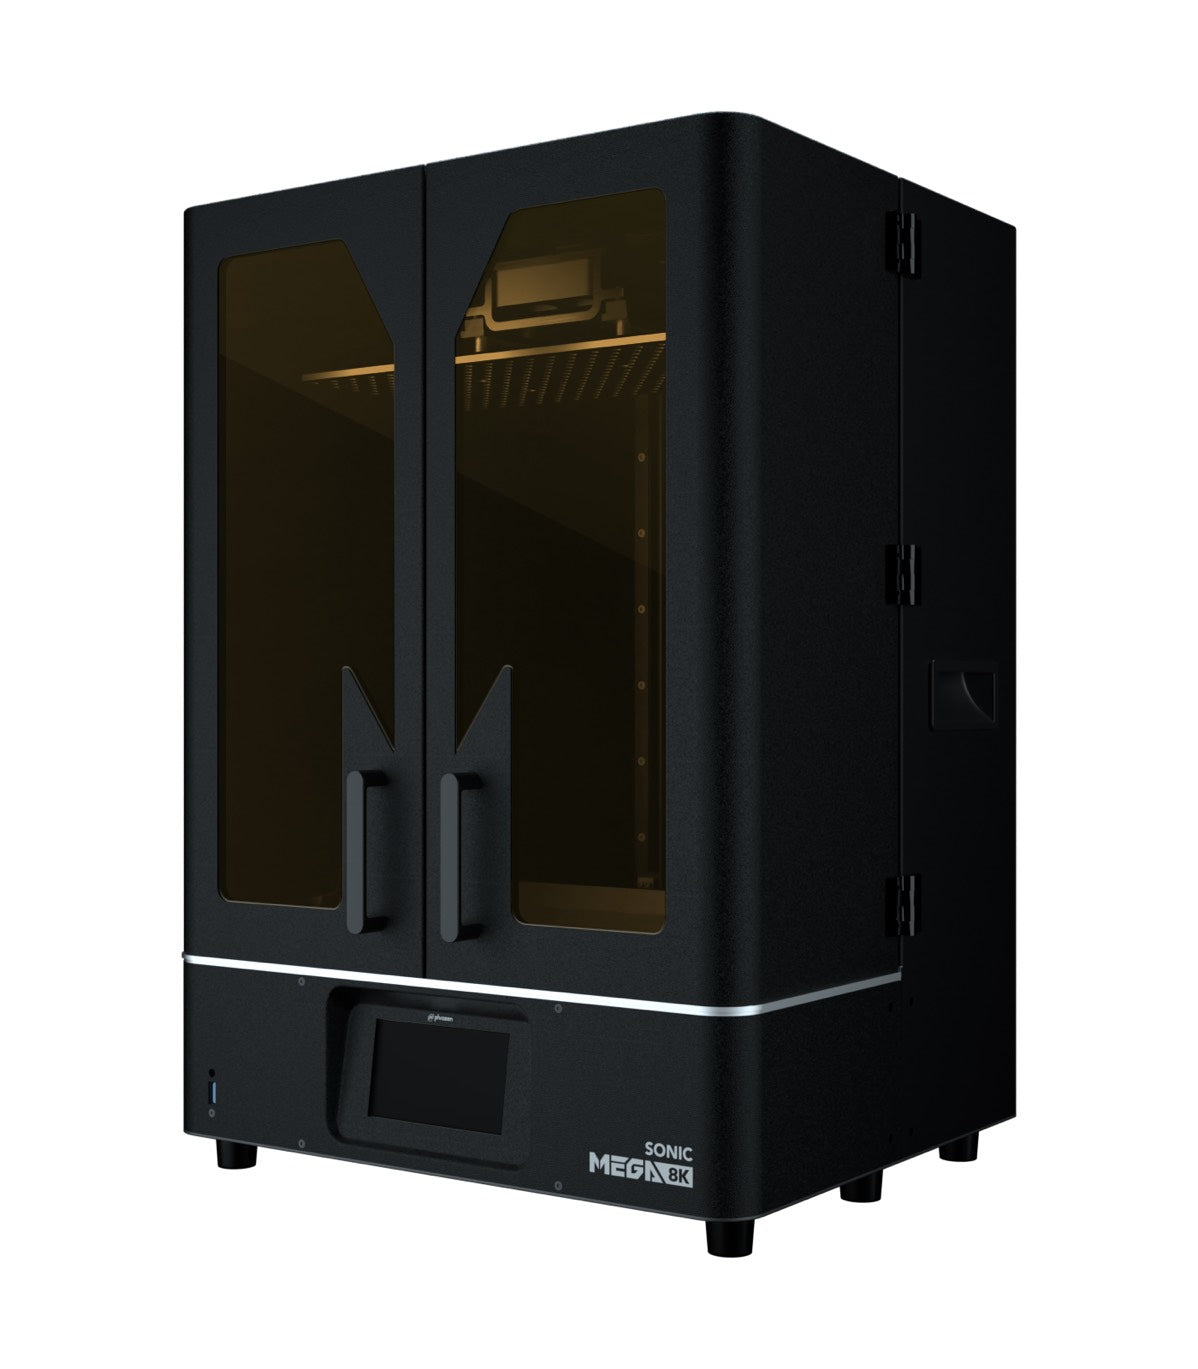 Phrozen 光造形方式 ３Dプリンター 『Sonic Mega 8K』 – 3Dプリンターとレジンフィラメントの通販・購入はSK本舗